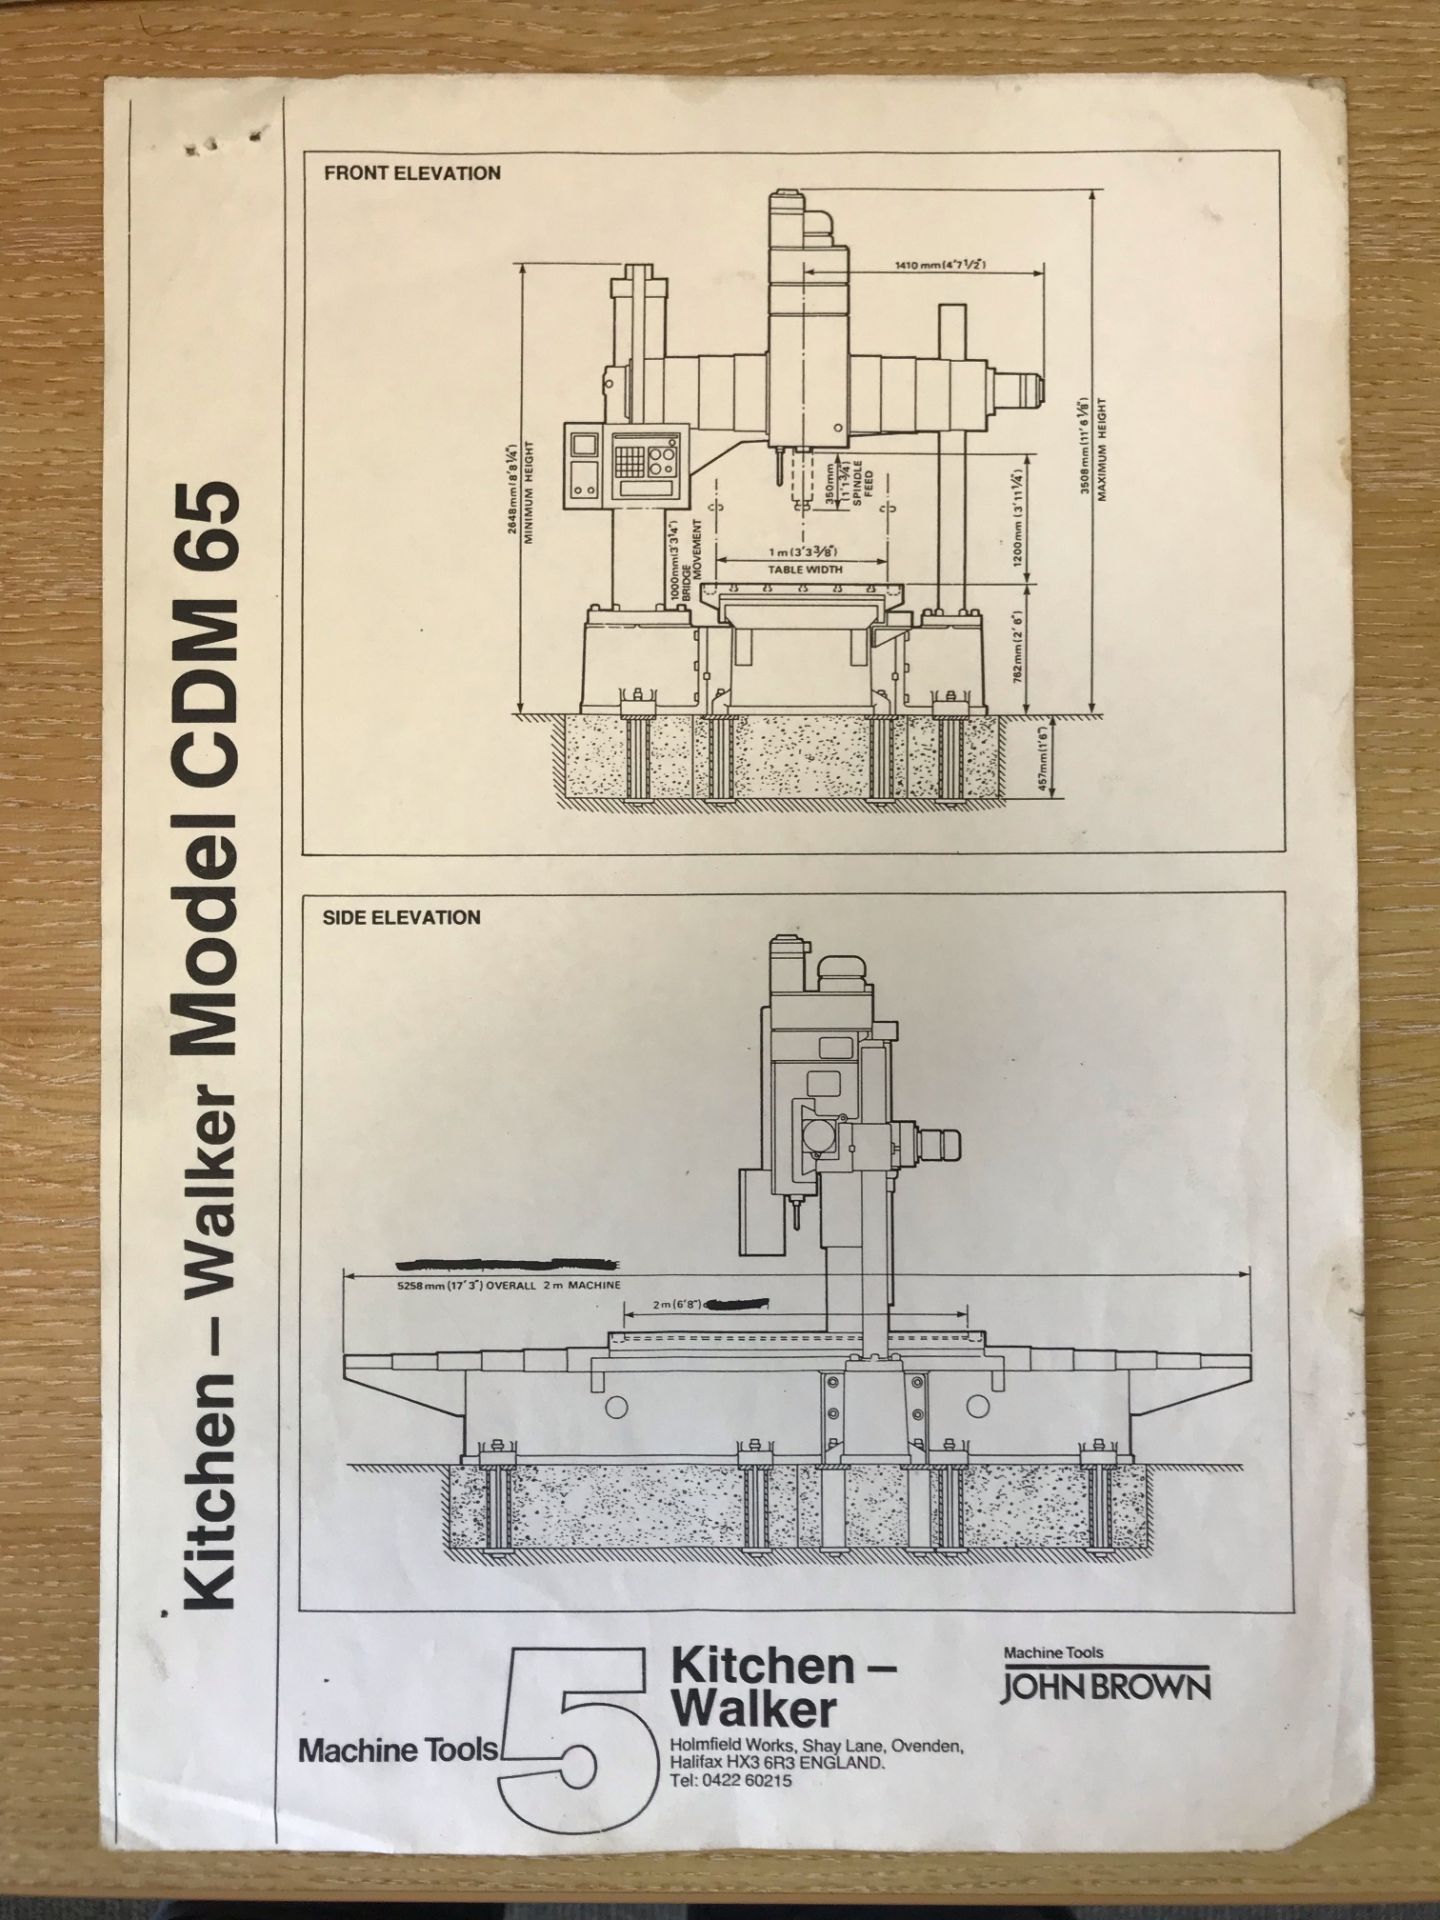 Kitchen & Walker CDM65 CNC Gantry Boring, Tapping, Milling Machine - Image 3 of 9